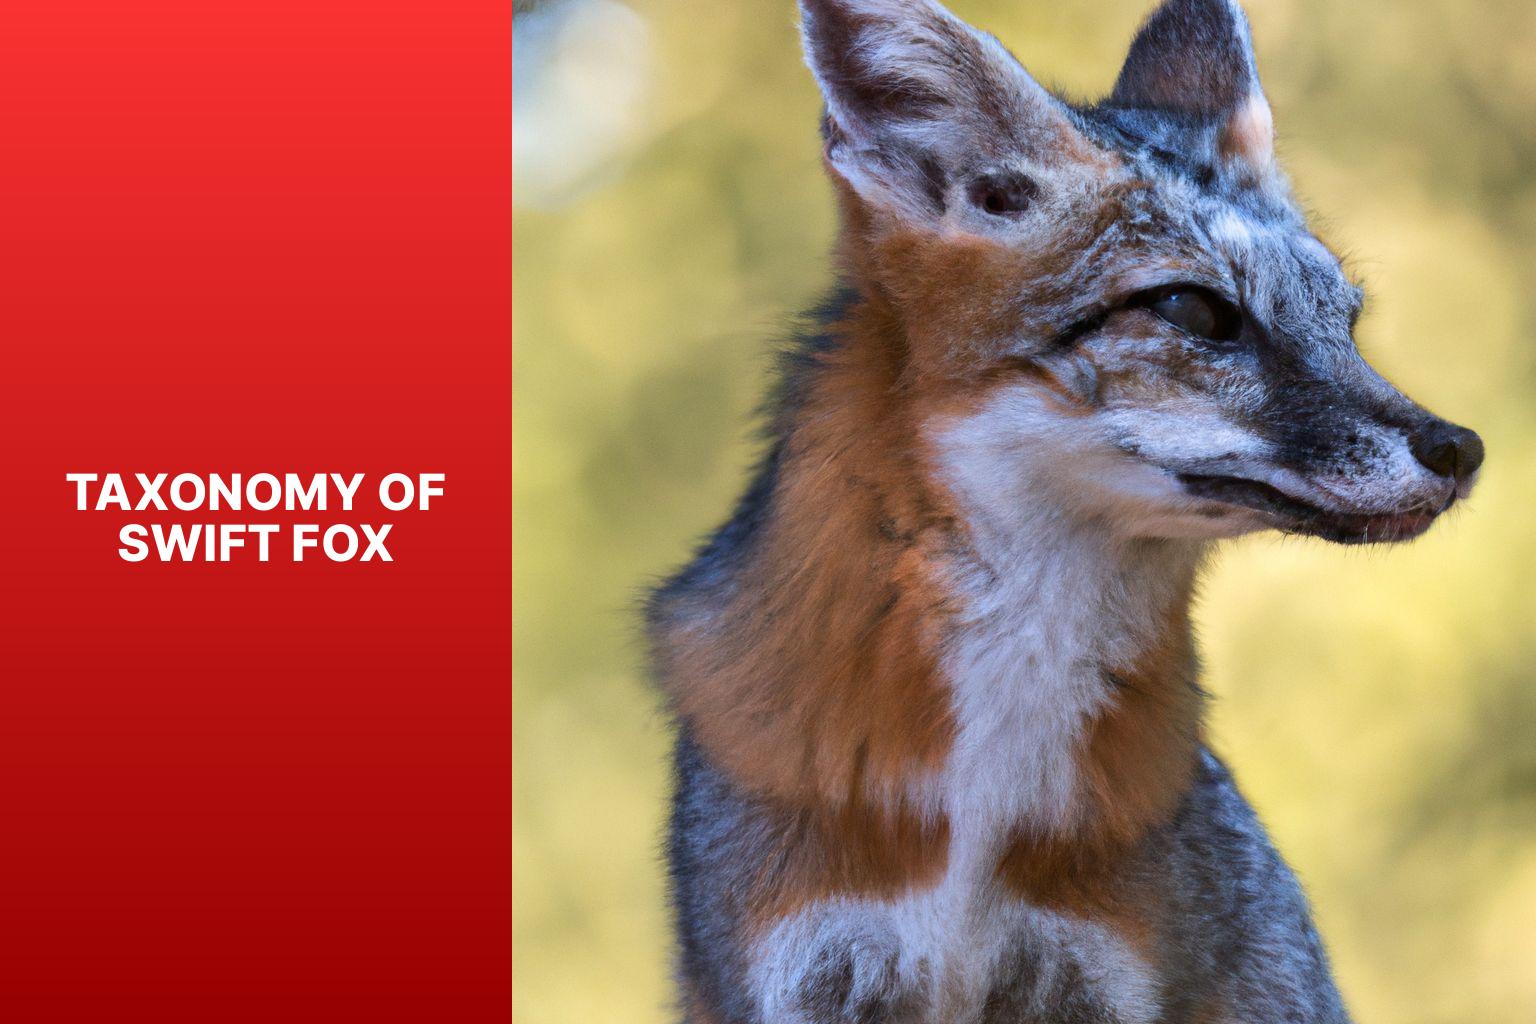 Taxonomy of Swift Fox - Swift Fox Taxonomy 